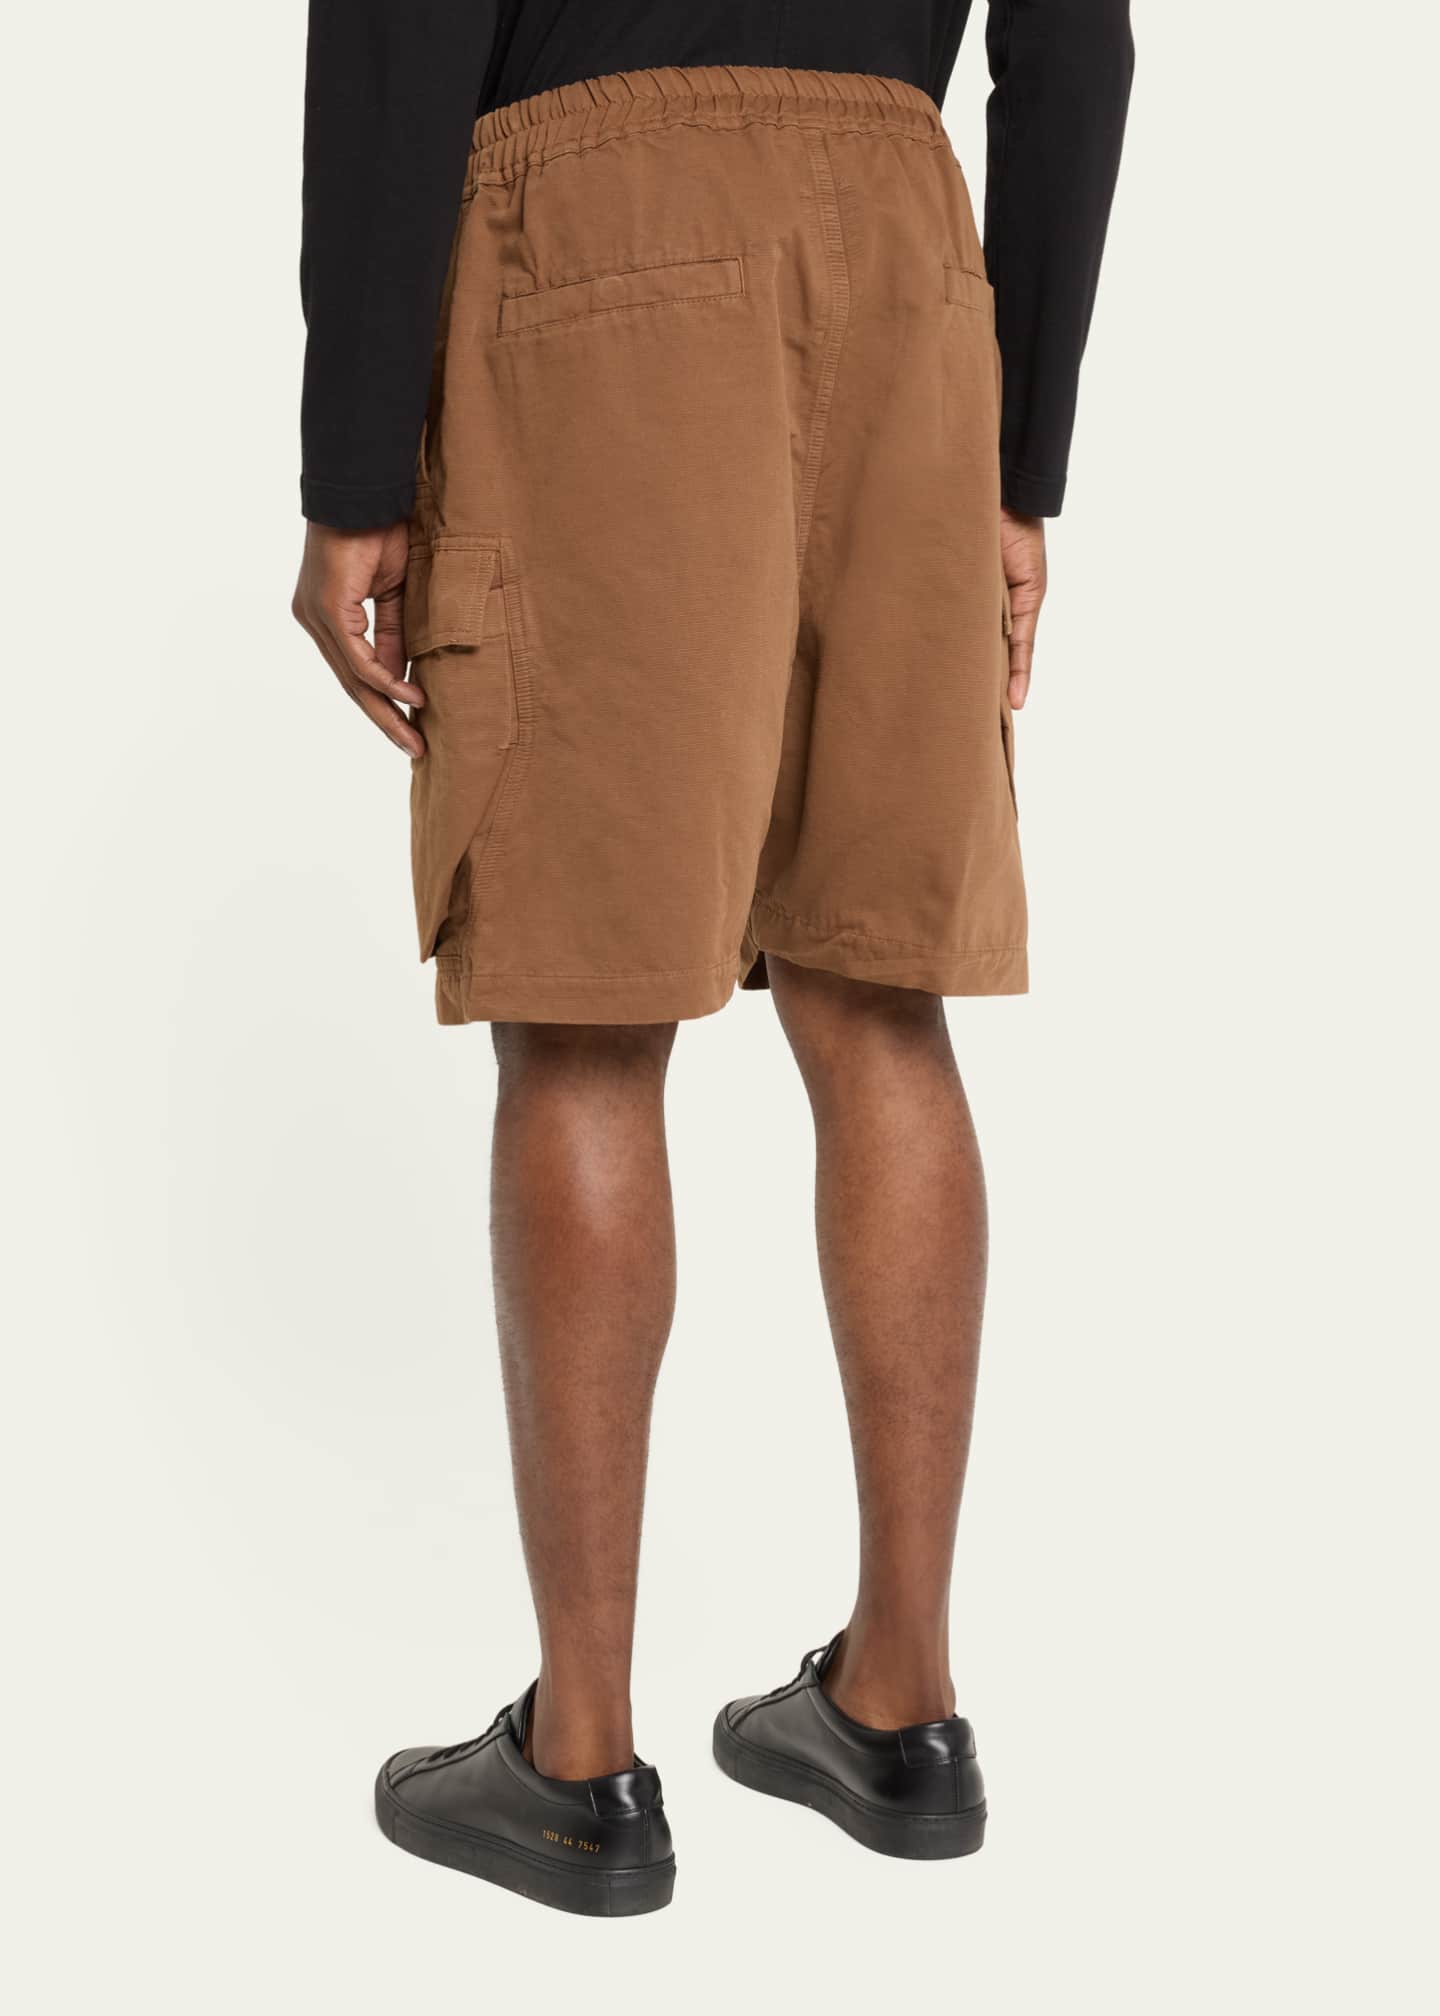 Cargobelas Cotton Shorts